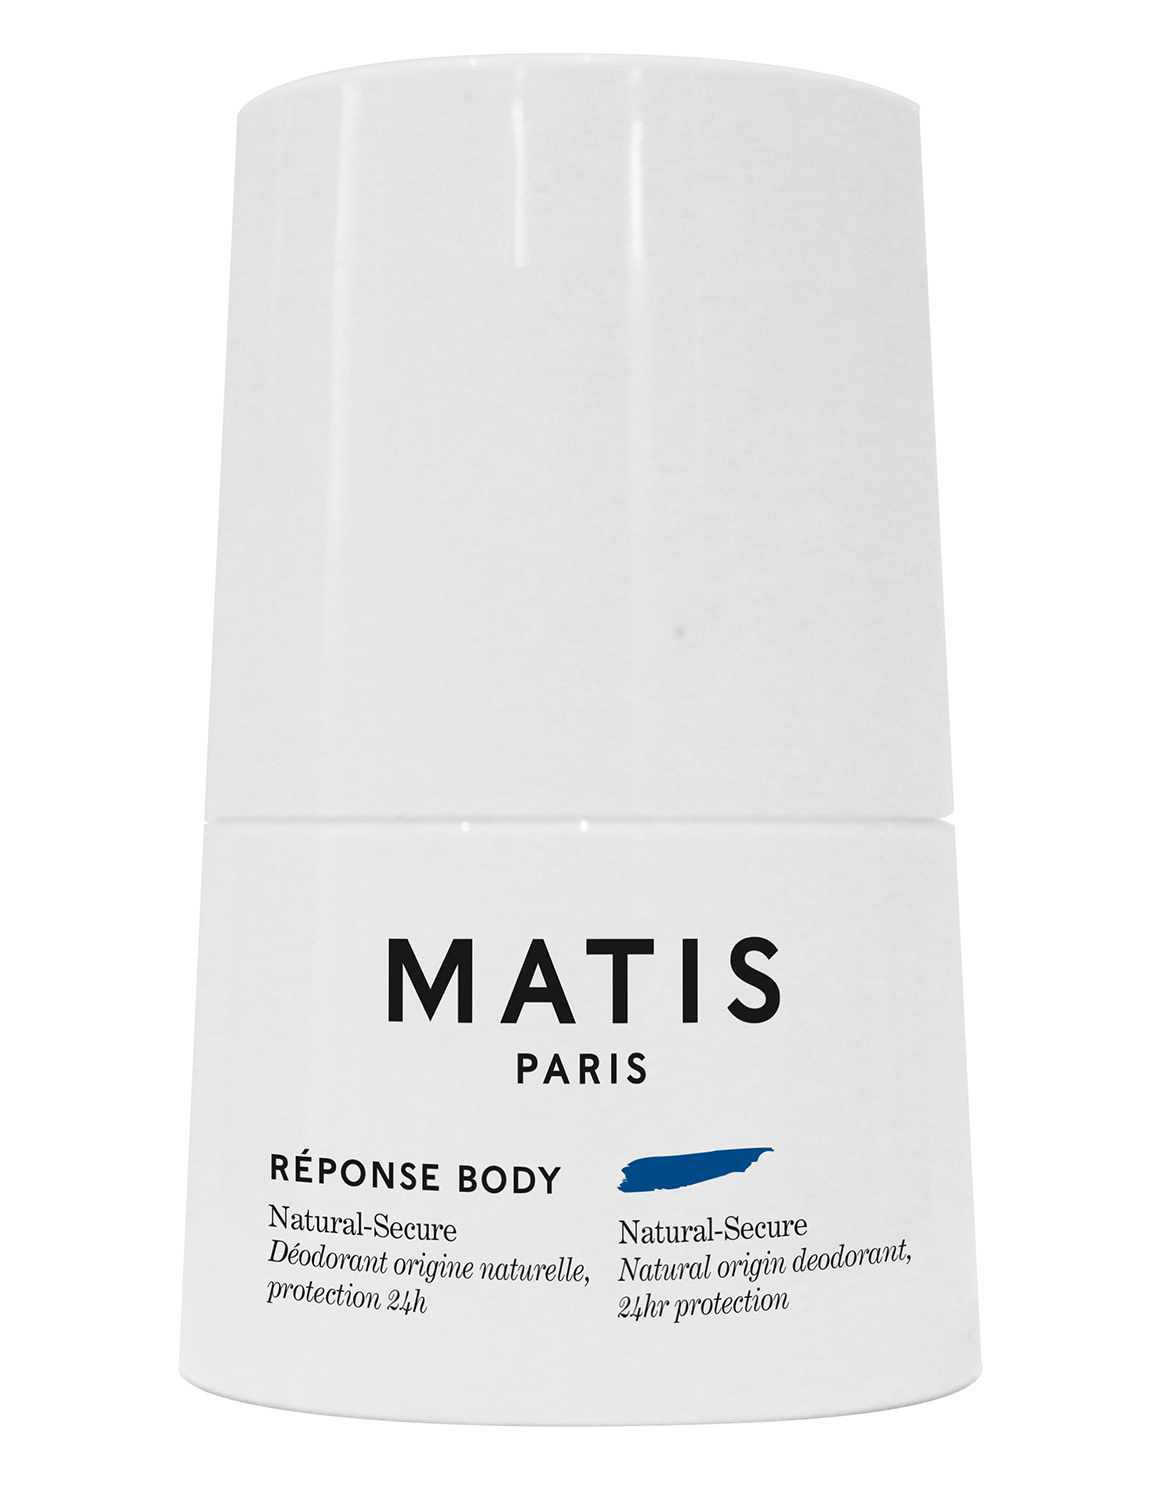 Матис Дезодорант с натуральными компонентами и с уровнем защиты 24 часа, 50 мл (Matis, Reponse body) фото 0